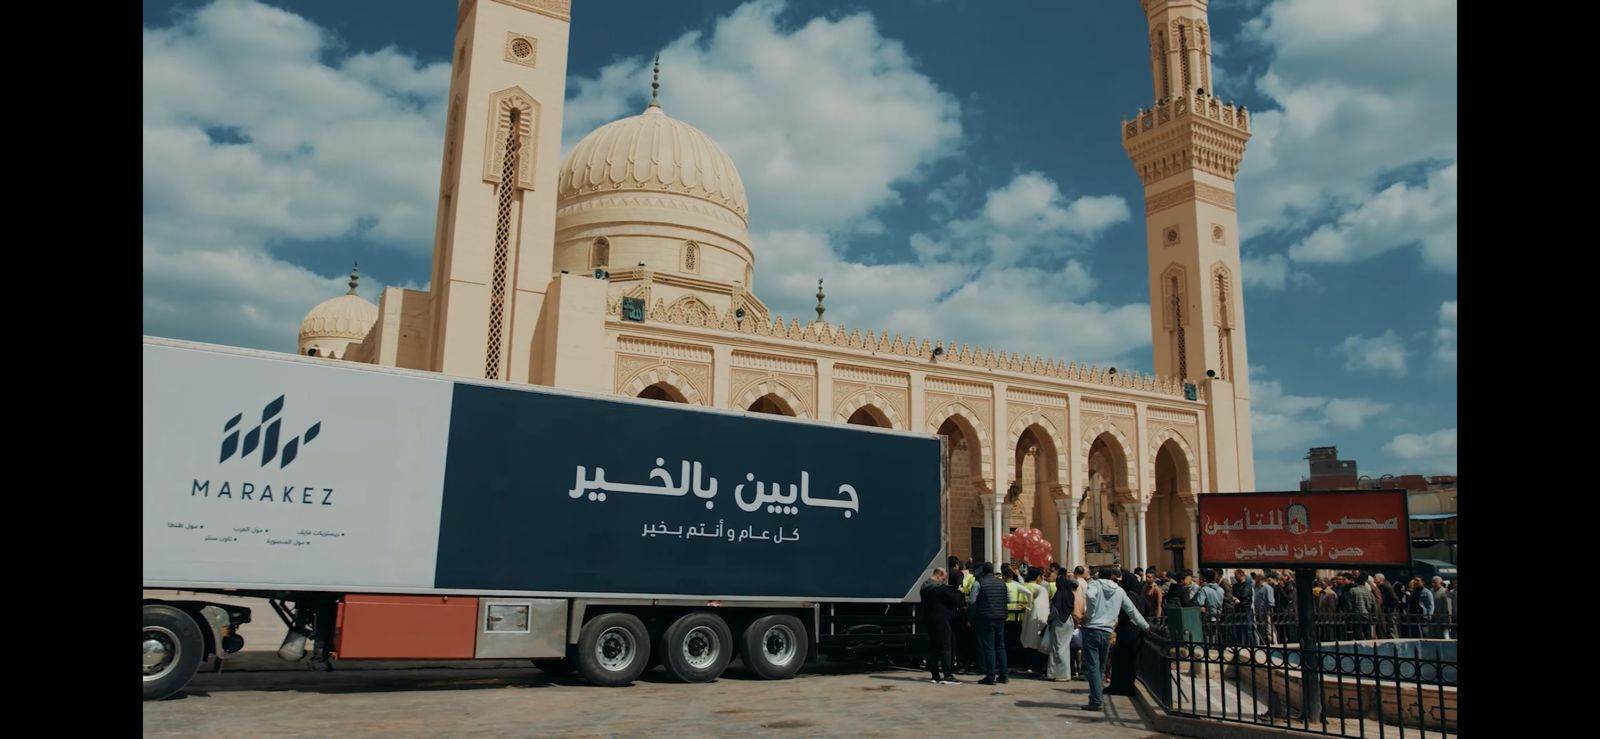 حملة شركة مراكز في رمضان